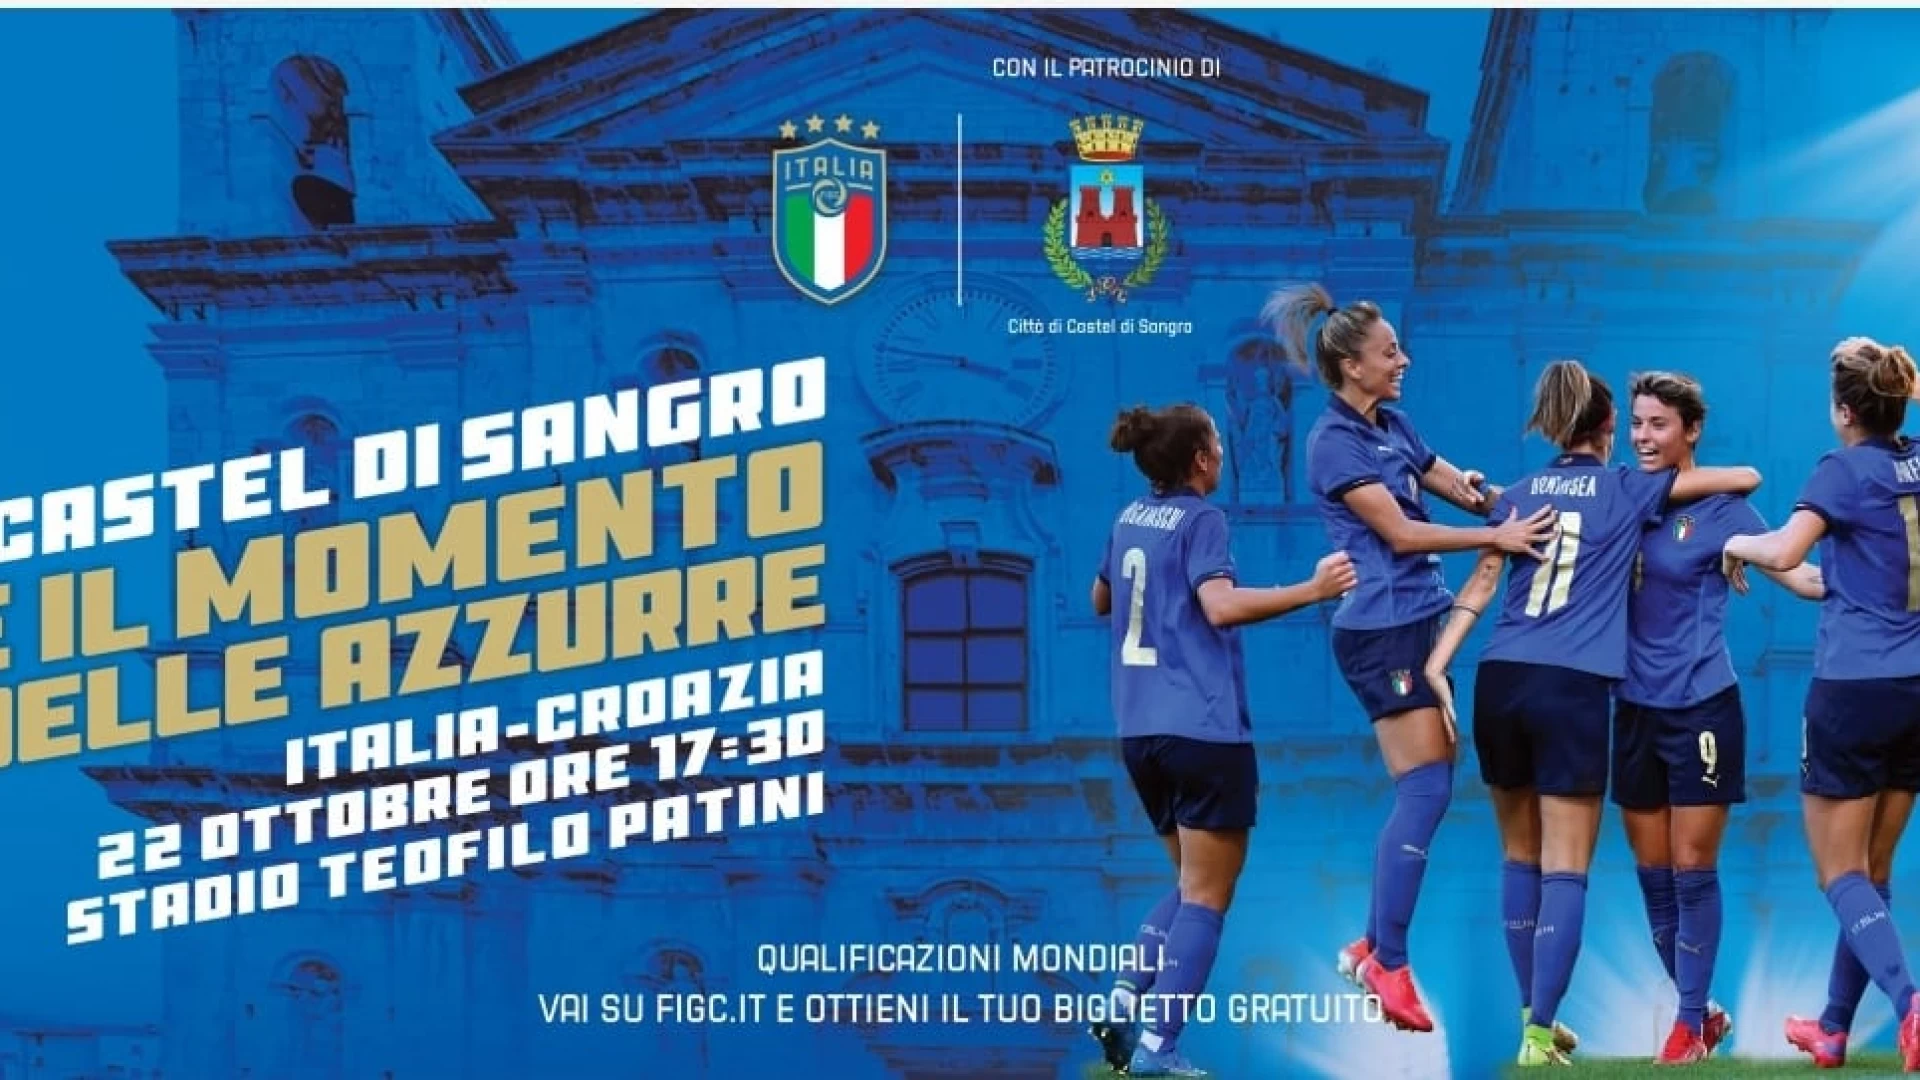 Castel Di Sangro: arriva la nazionale femminile. Il 22 ottobre la sfida al Patini contro la Croazia. I tifosi potranno scaricare dal web il loro biglietto gratuito.